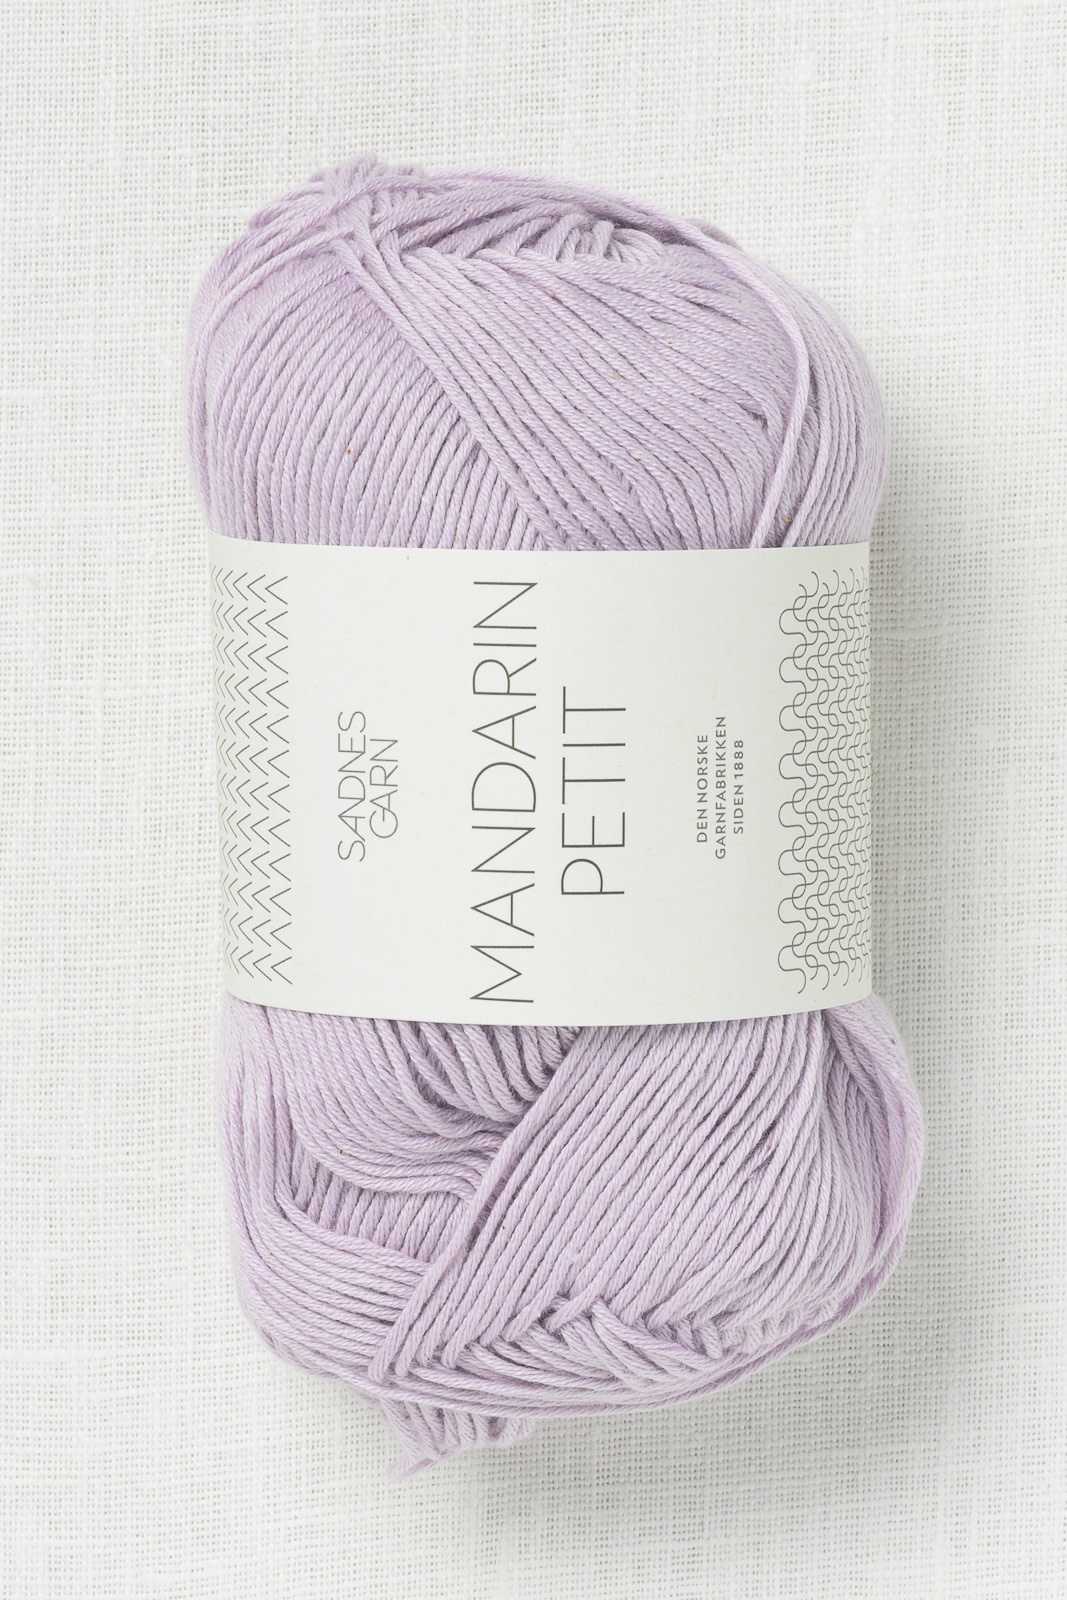 Sandnes Garn Mandarin 4620 Lilac - Wool and Company Fine Yarn